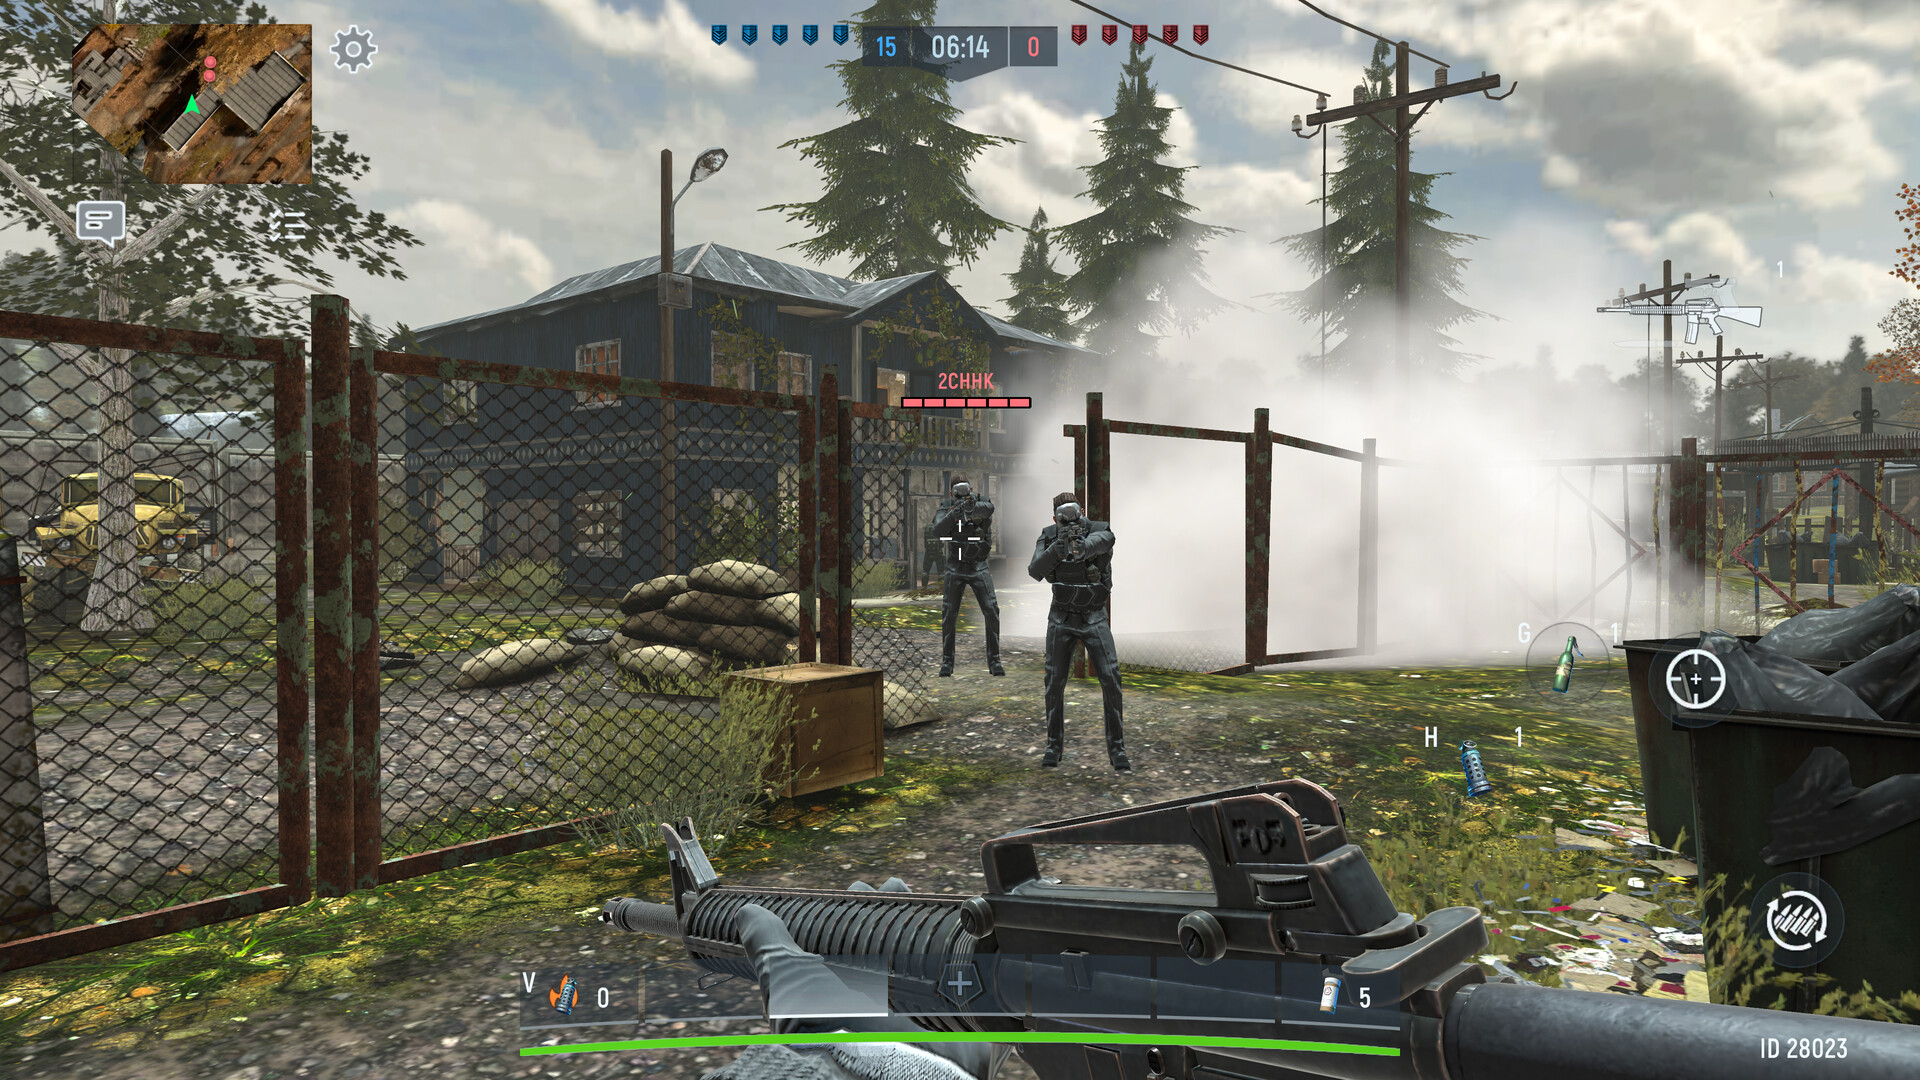 War Gun Shooting Games Online on Steam